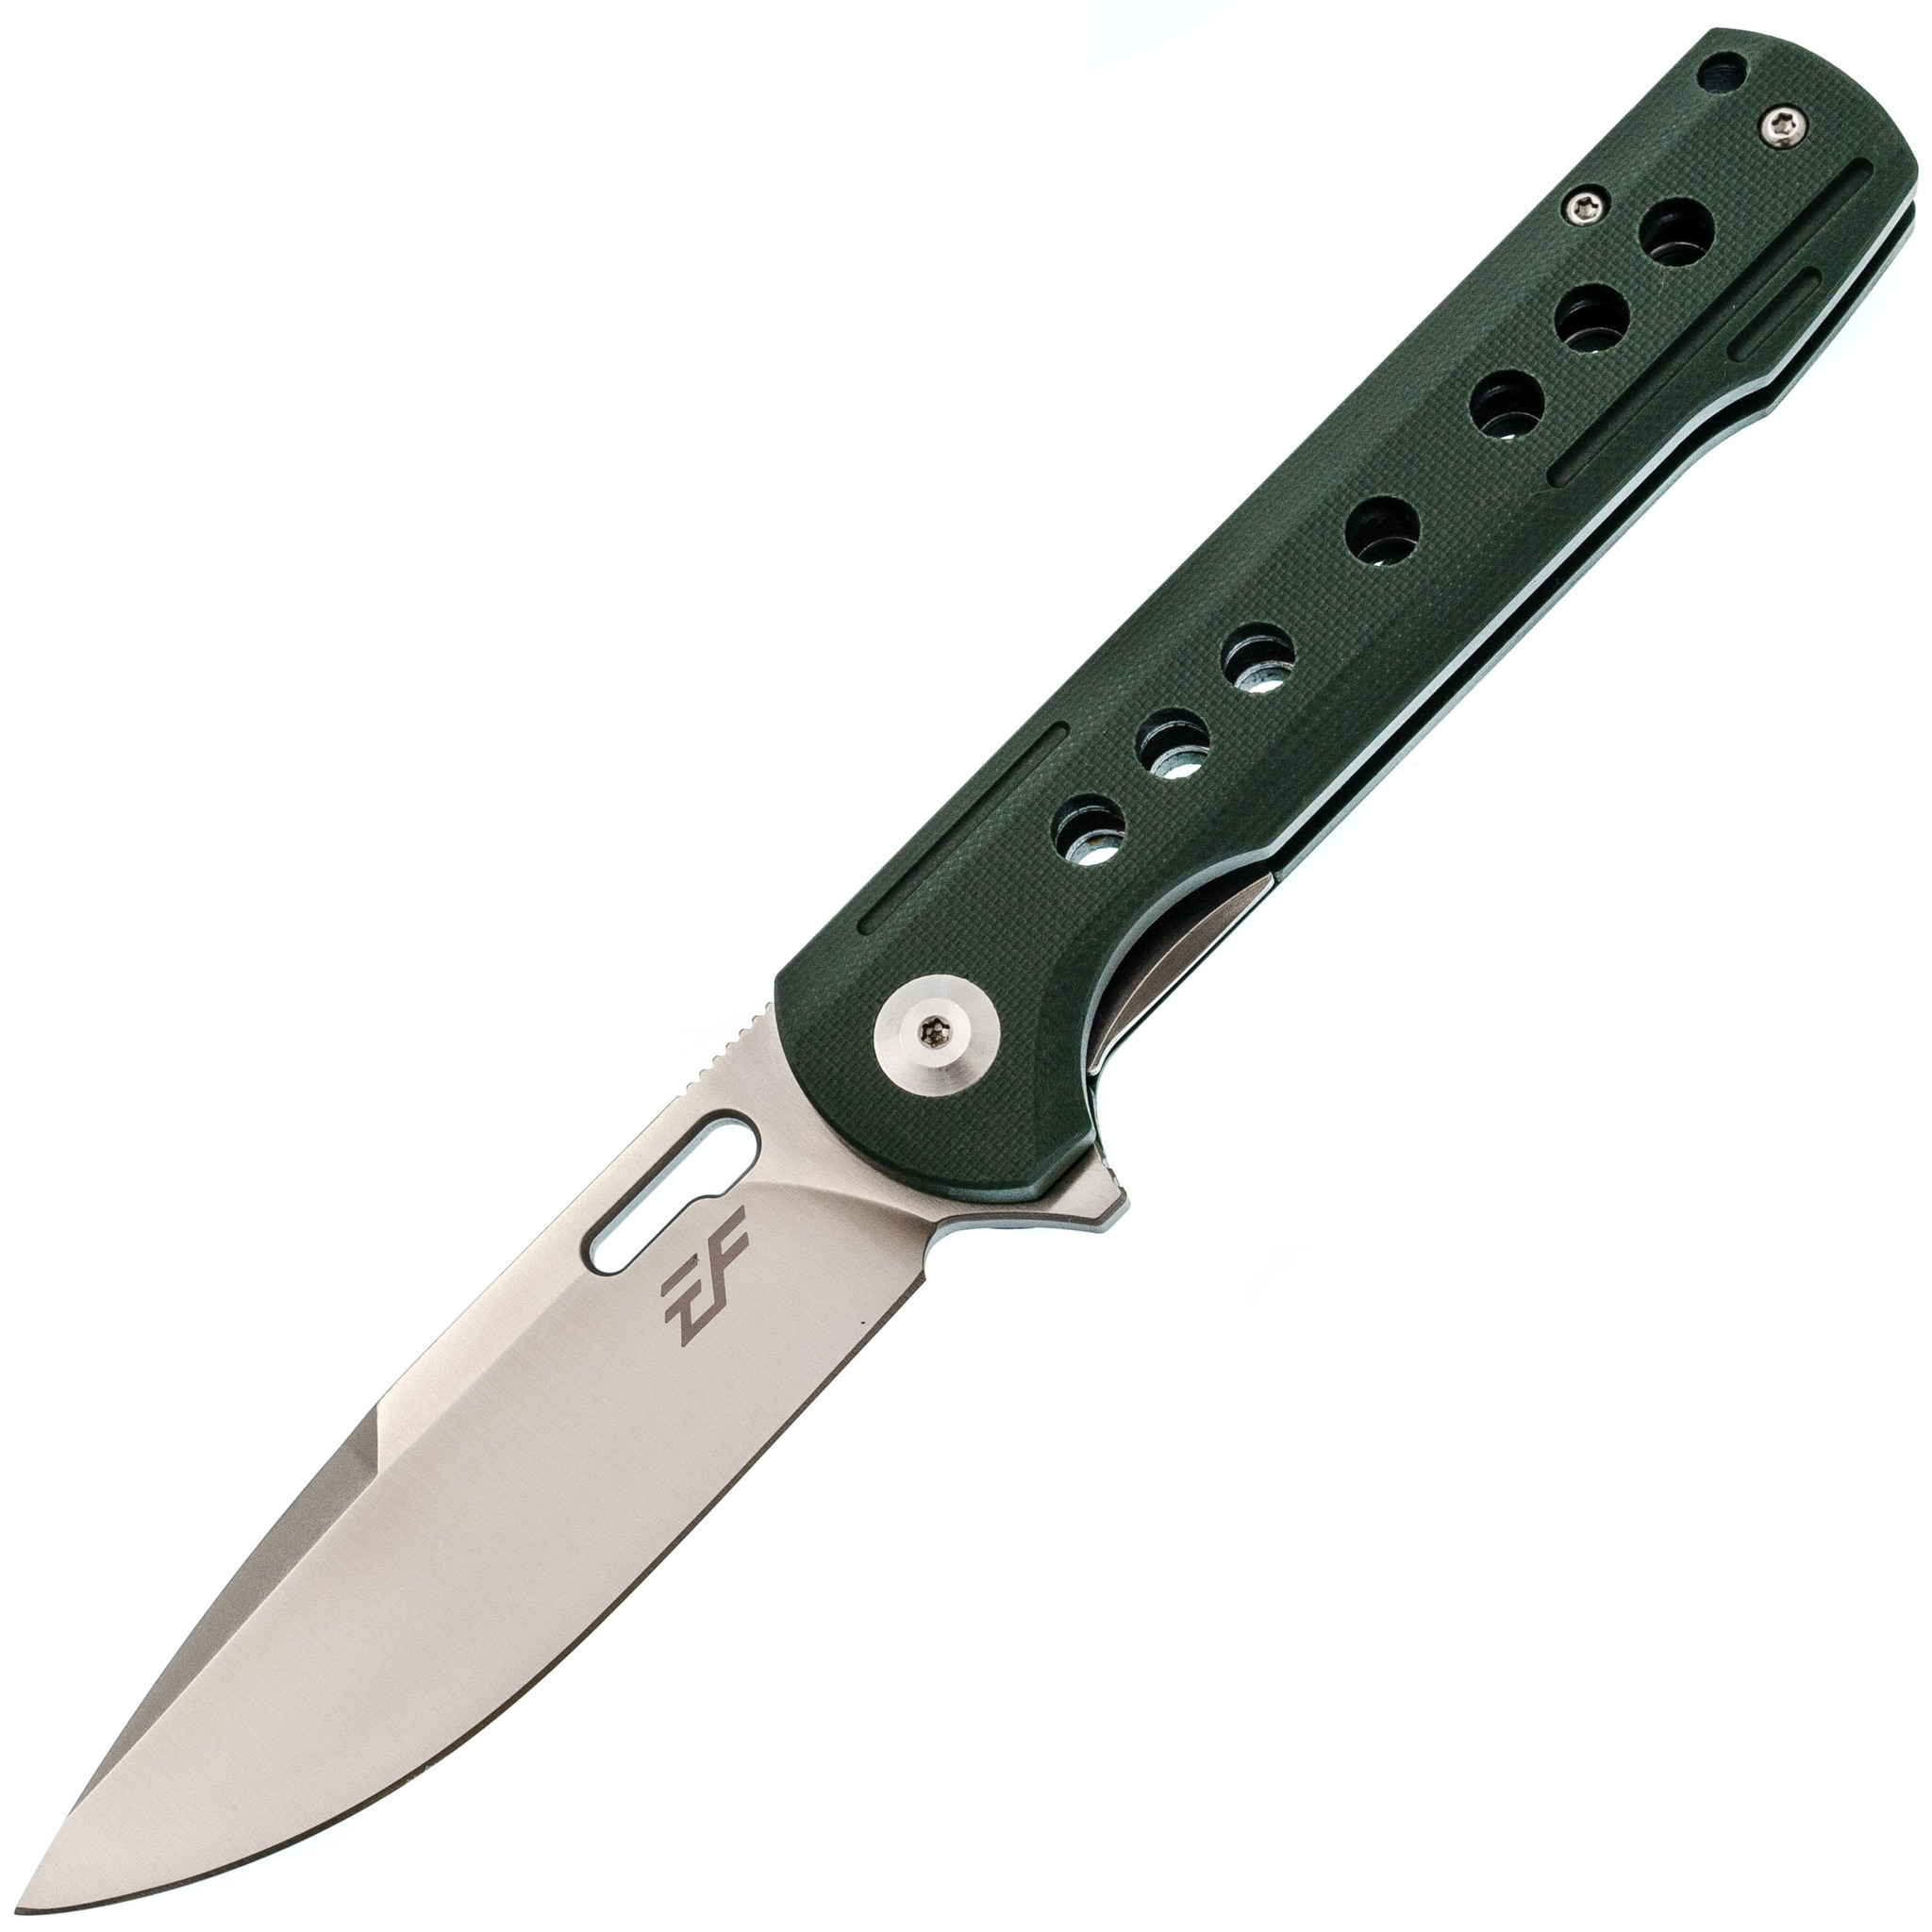 Складной нож Eafengrow EF910 Green, сталь D2, рукоять G10 шезлонг складной м6186 green glade